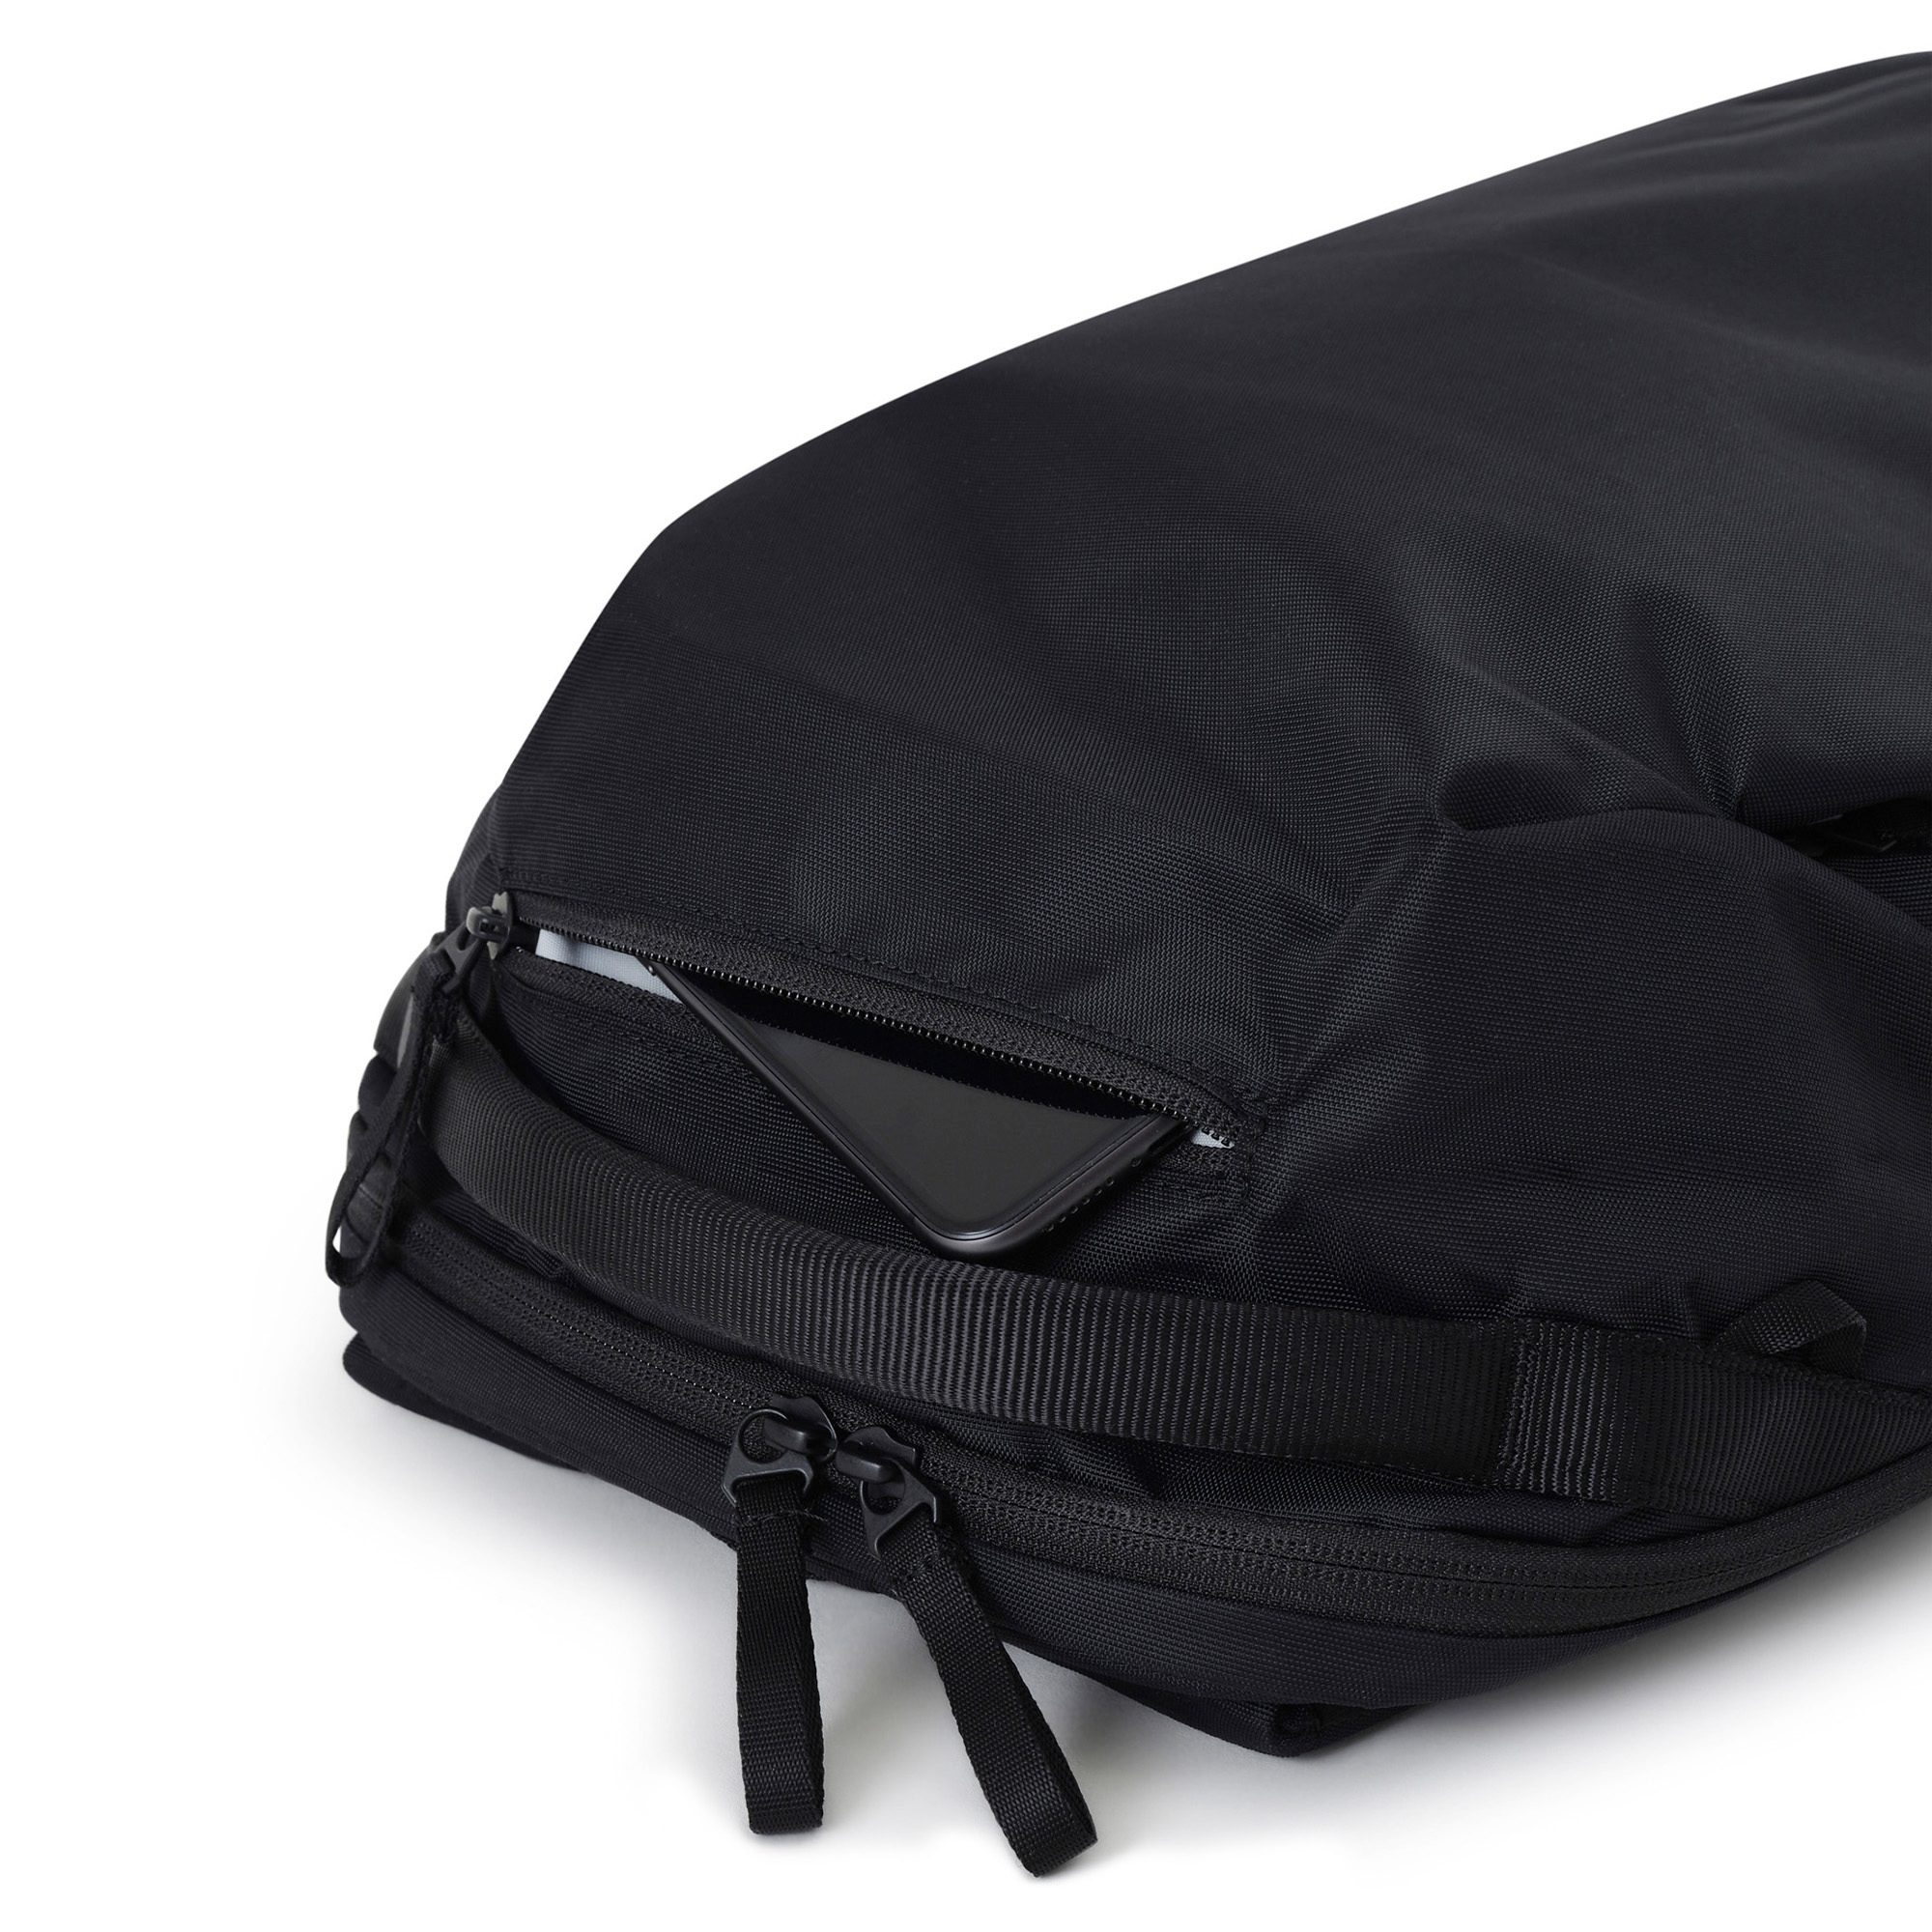 Urth Norite 24L Backpack + Camera Insert (Black)